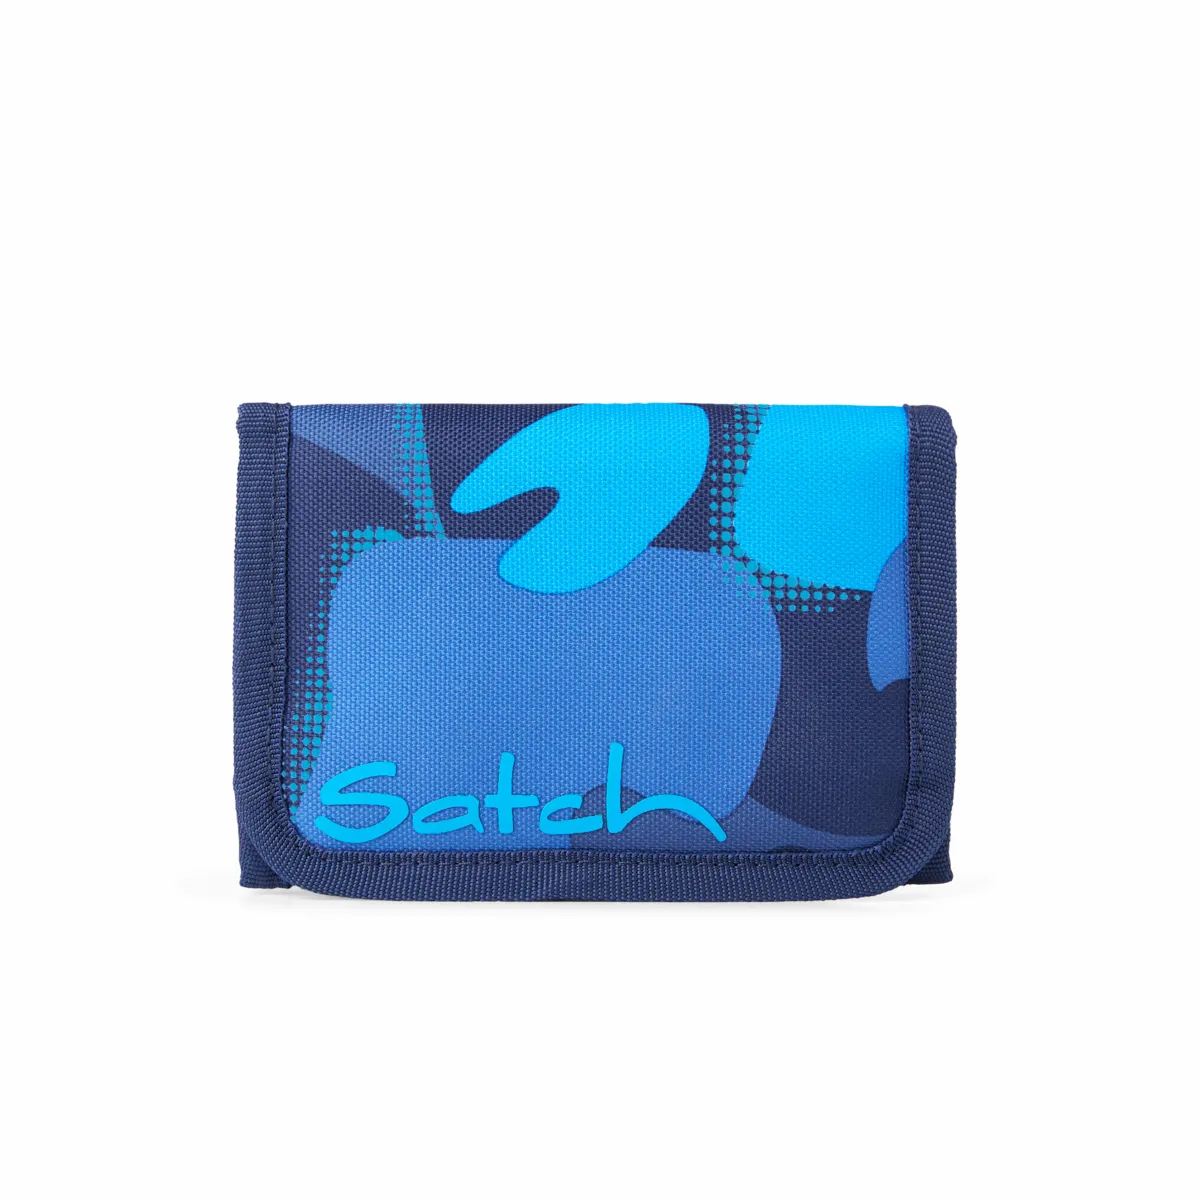 Abundantly Necessities læder Satch nylon pung med velcro - Køb online hos Helm.